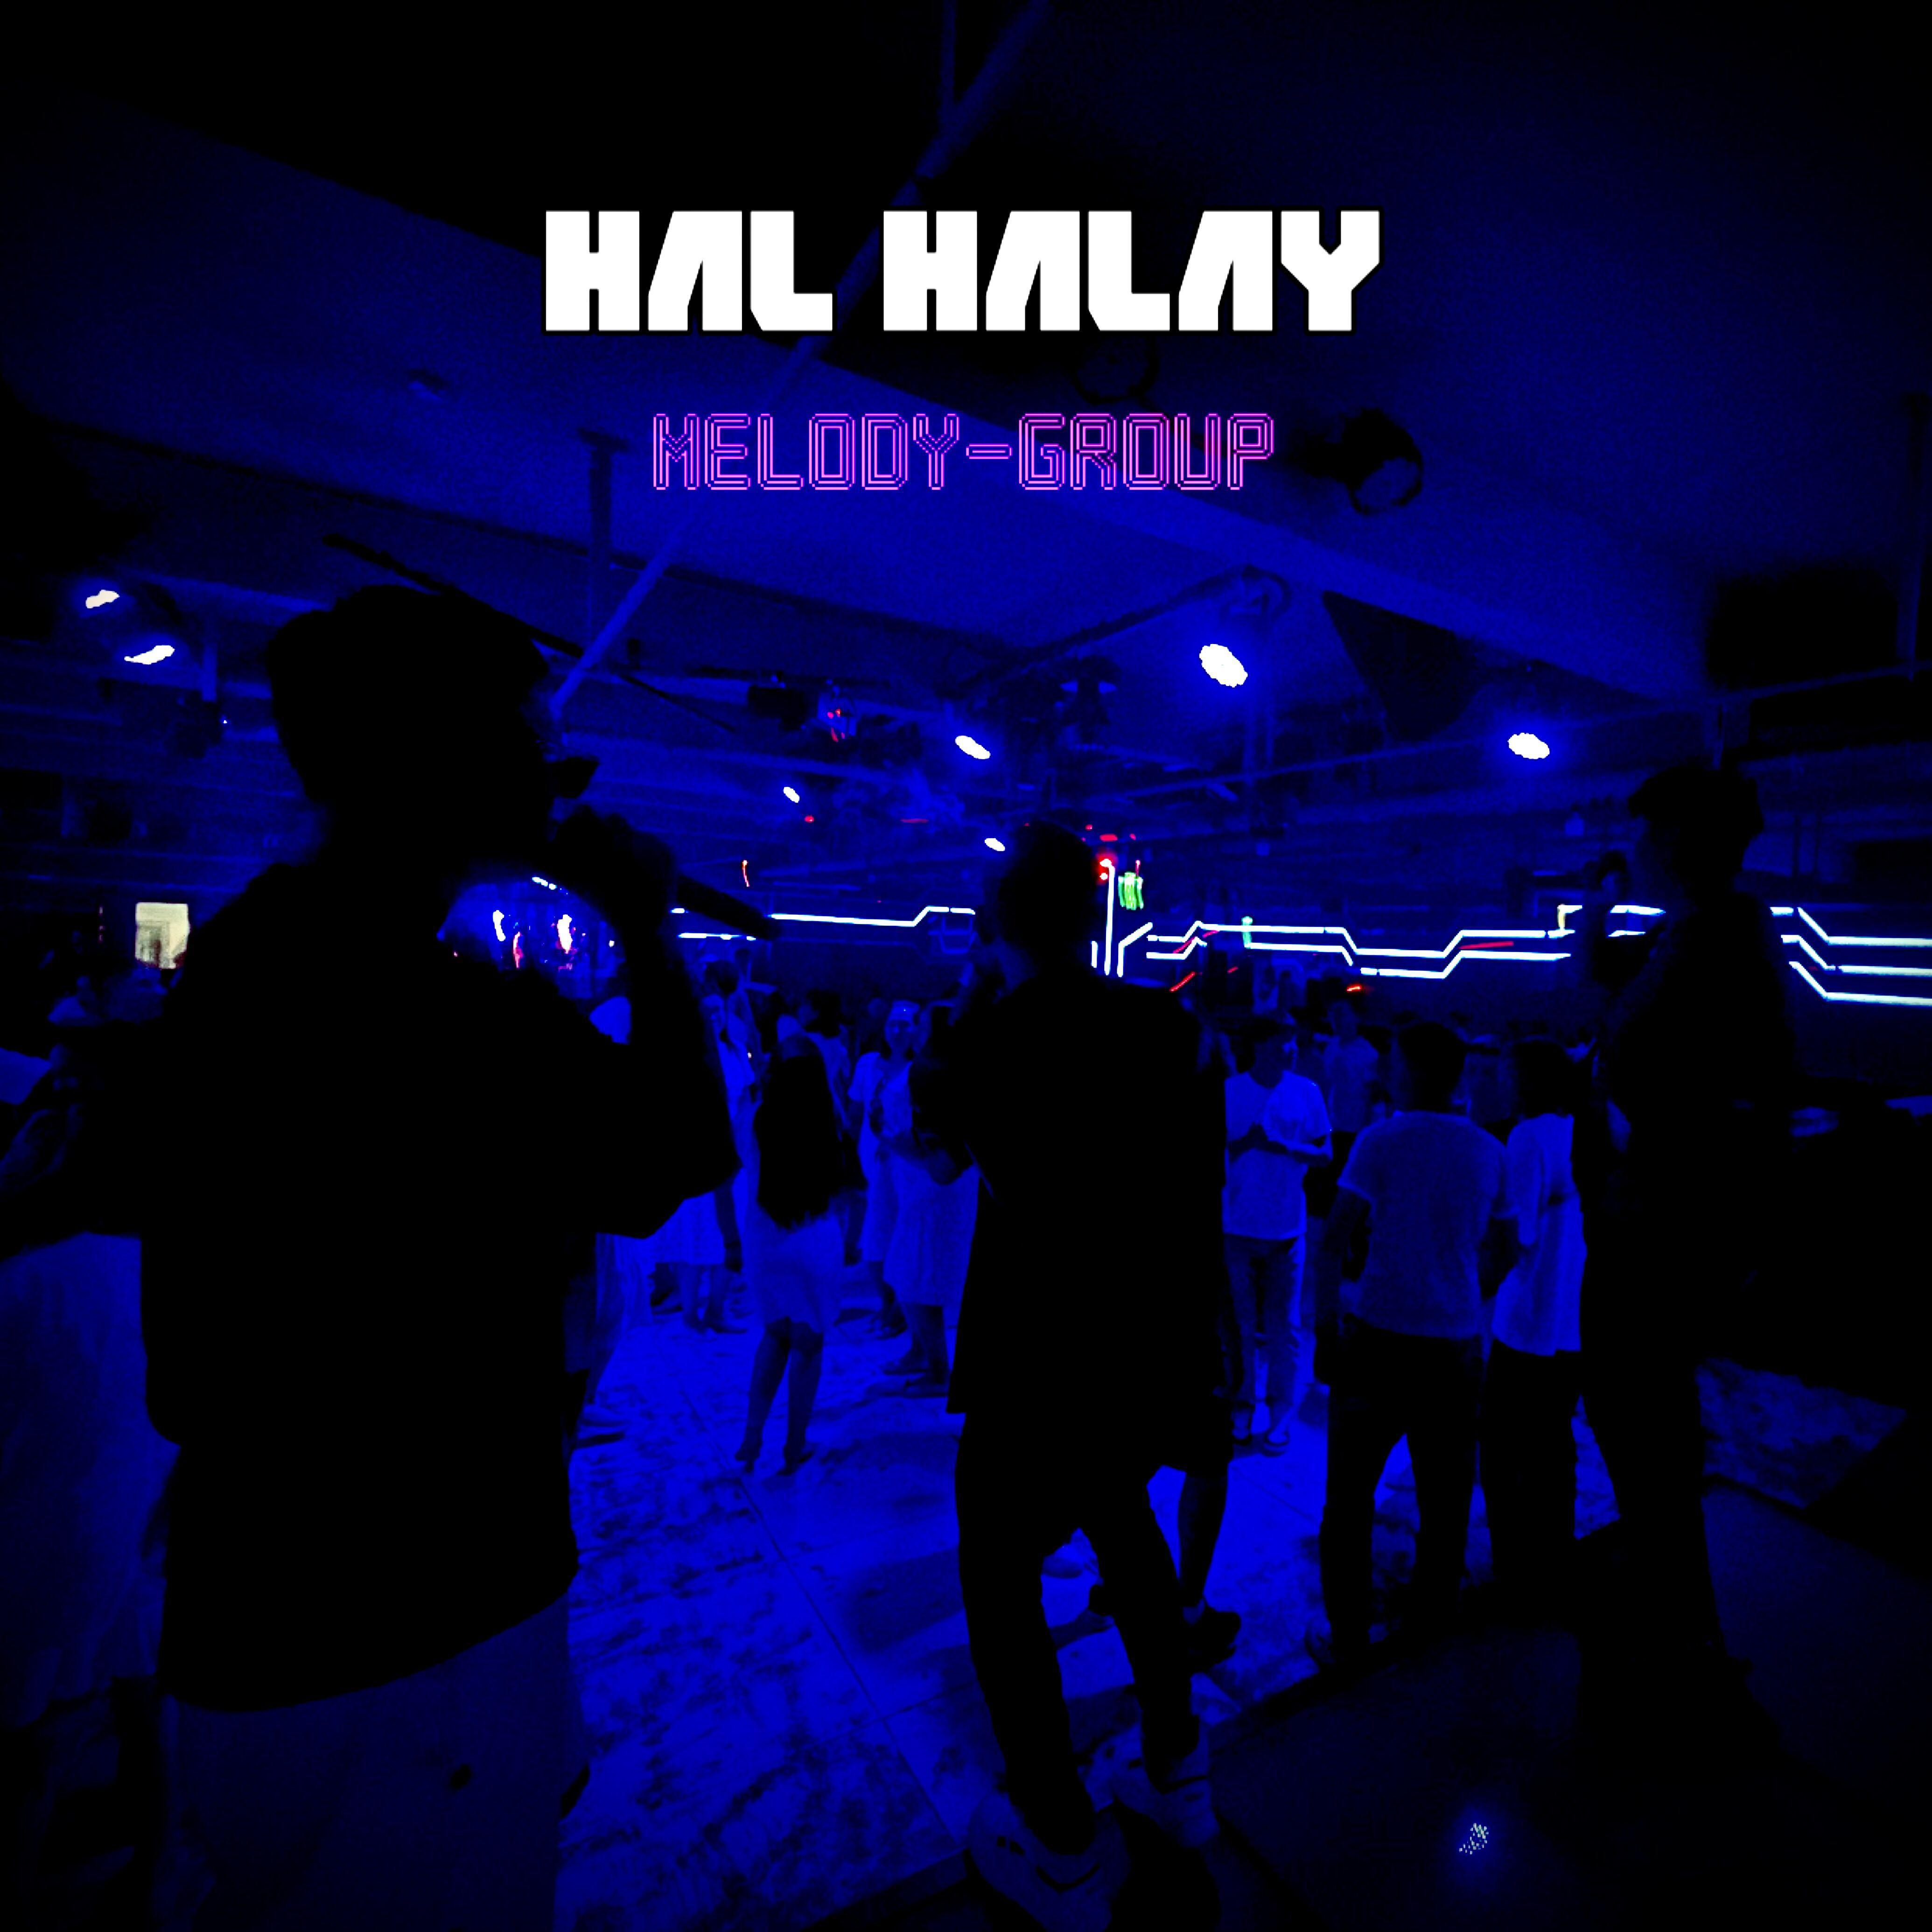 MELODY-GROUP - HAL HALAY